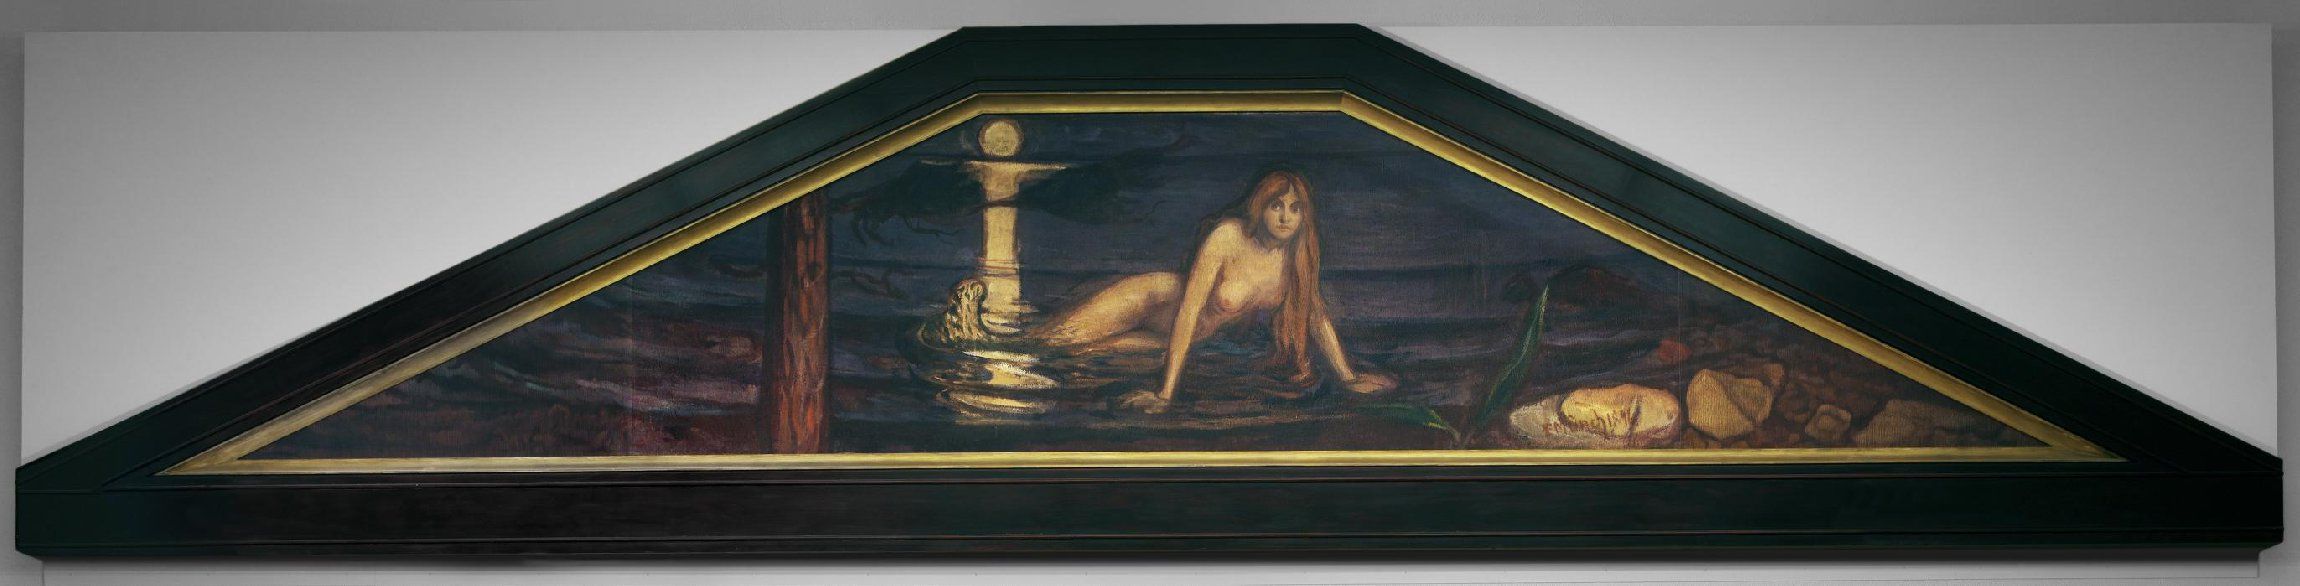 Edvard Munchs Mermaid